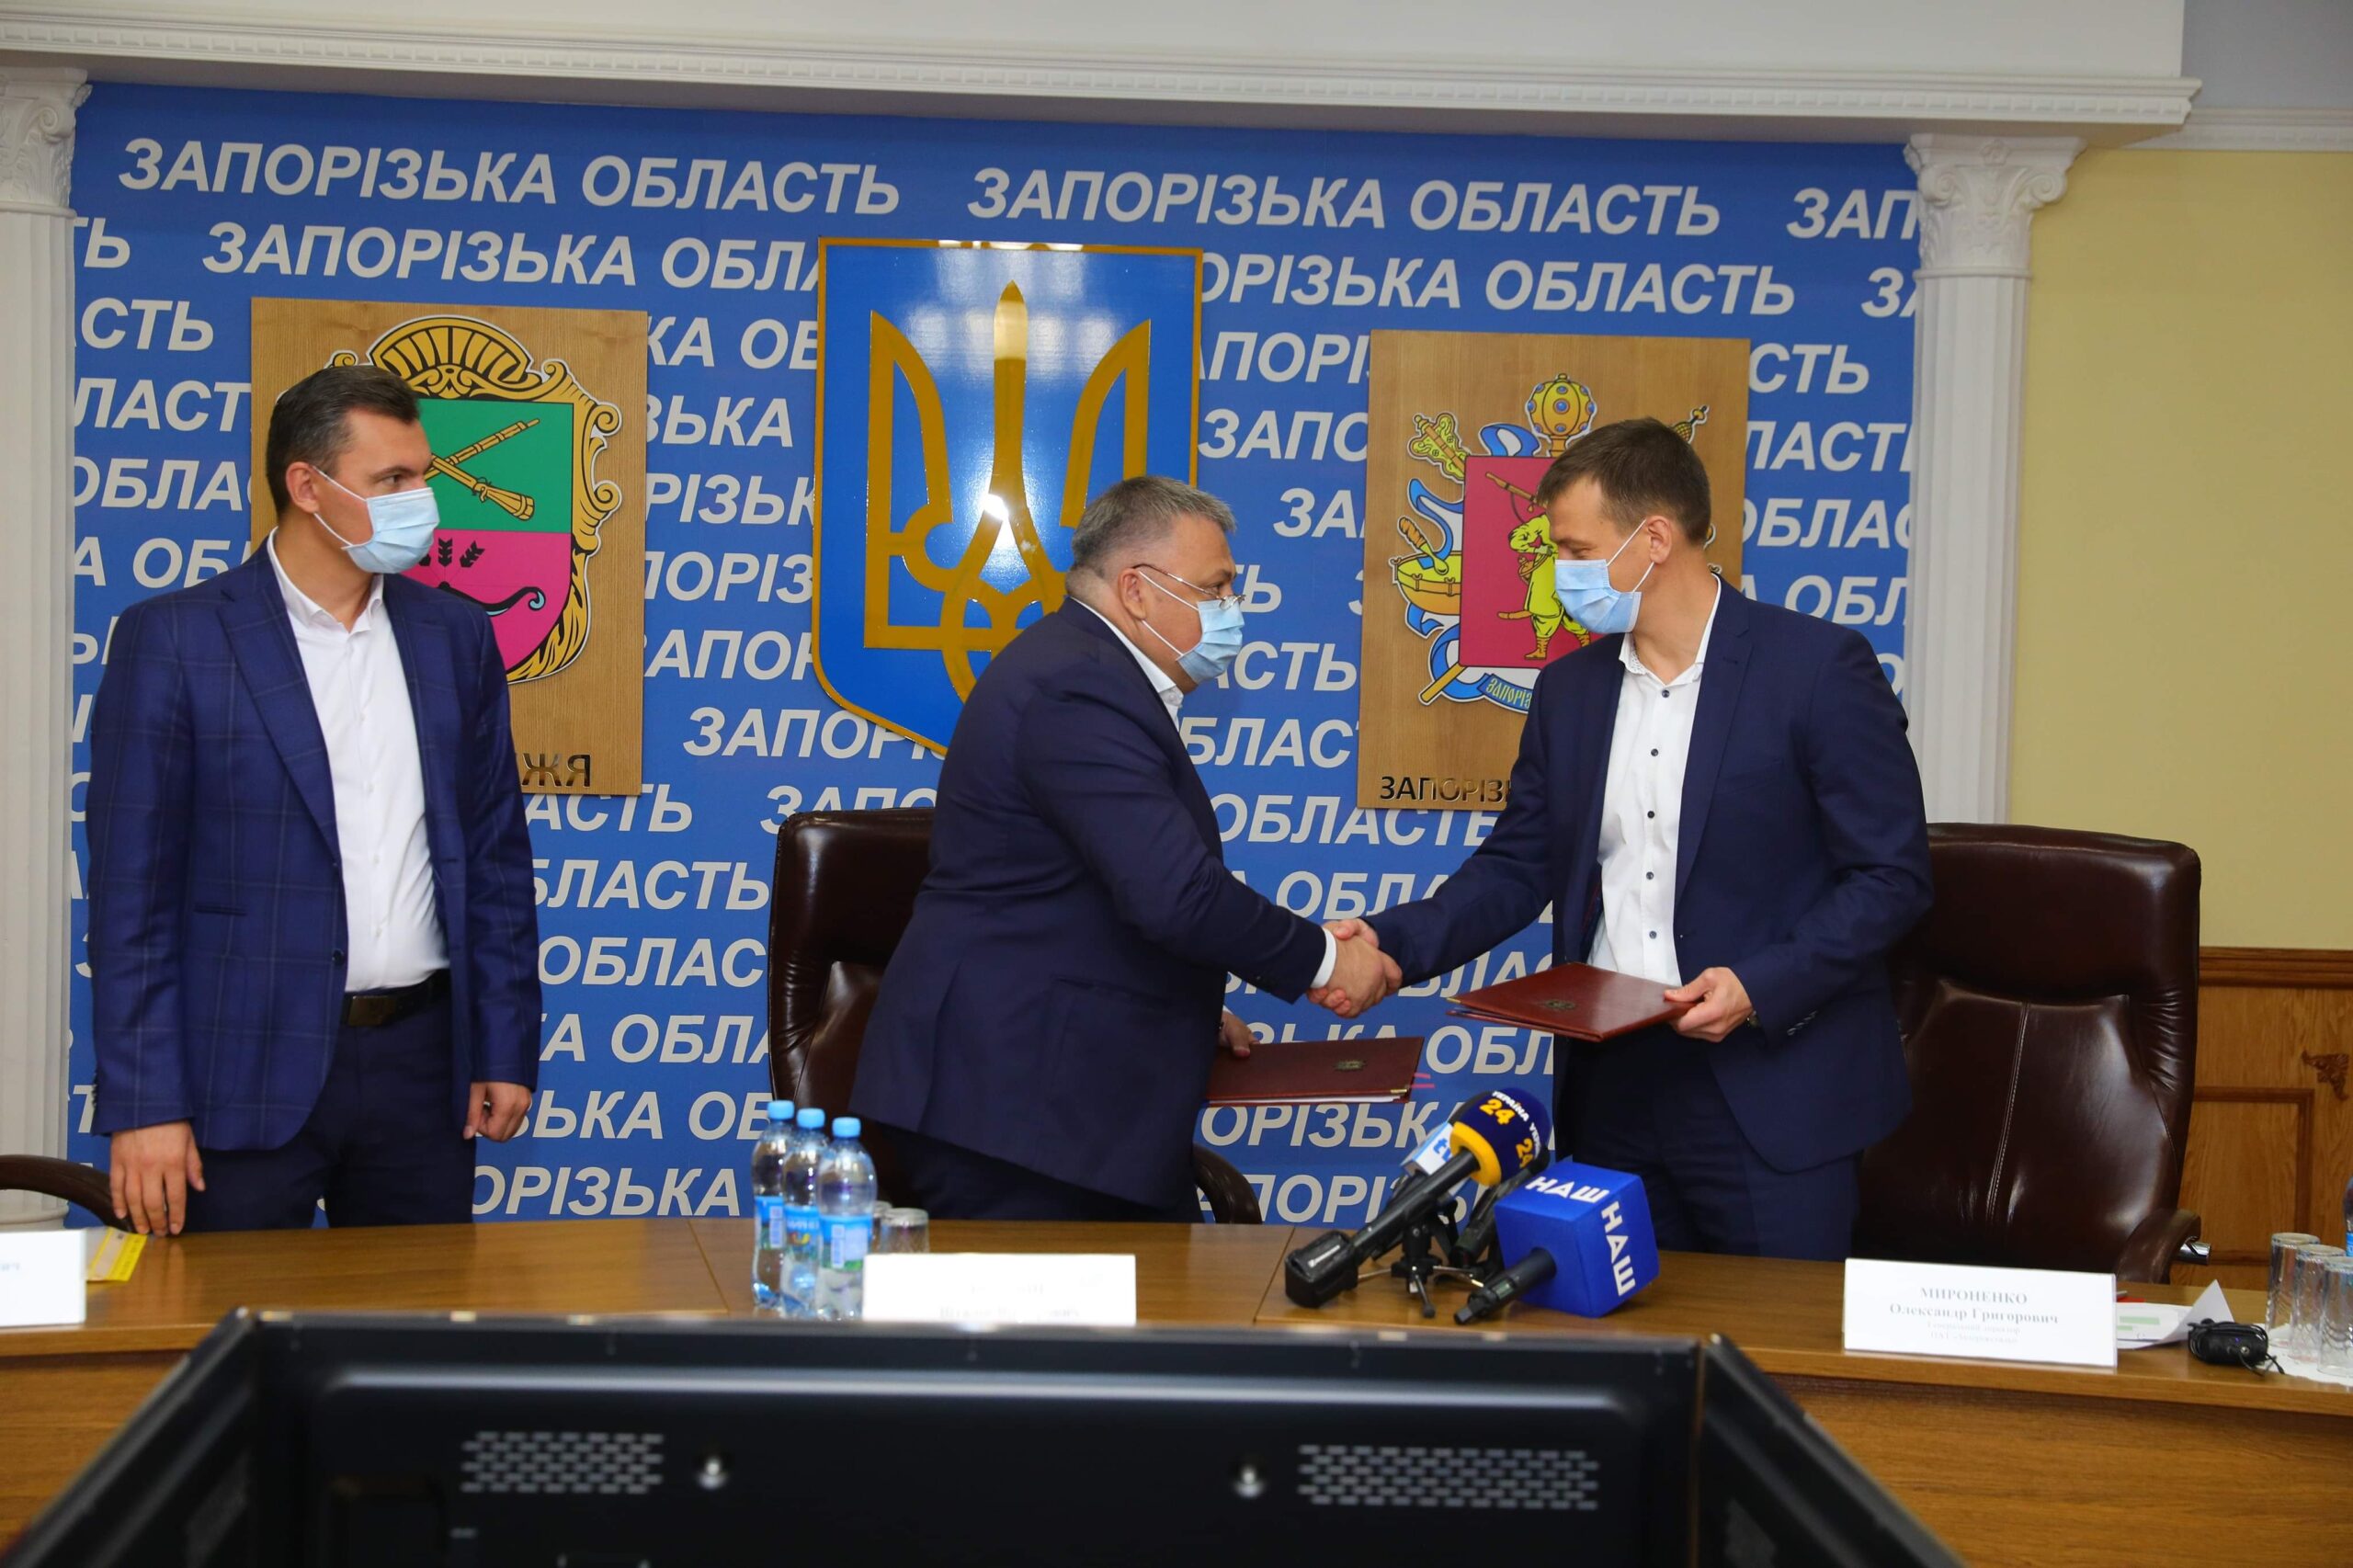 «Запорожсталь» и Запорожская облгосадминистрация подписали Меморандум о сотрудничестве в сфере экологии